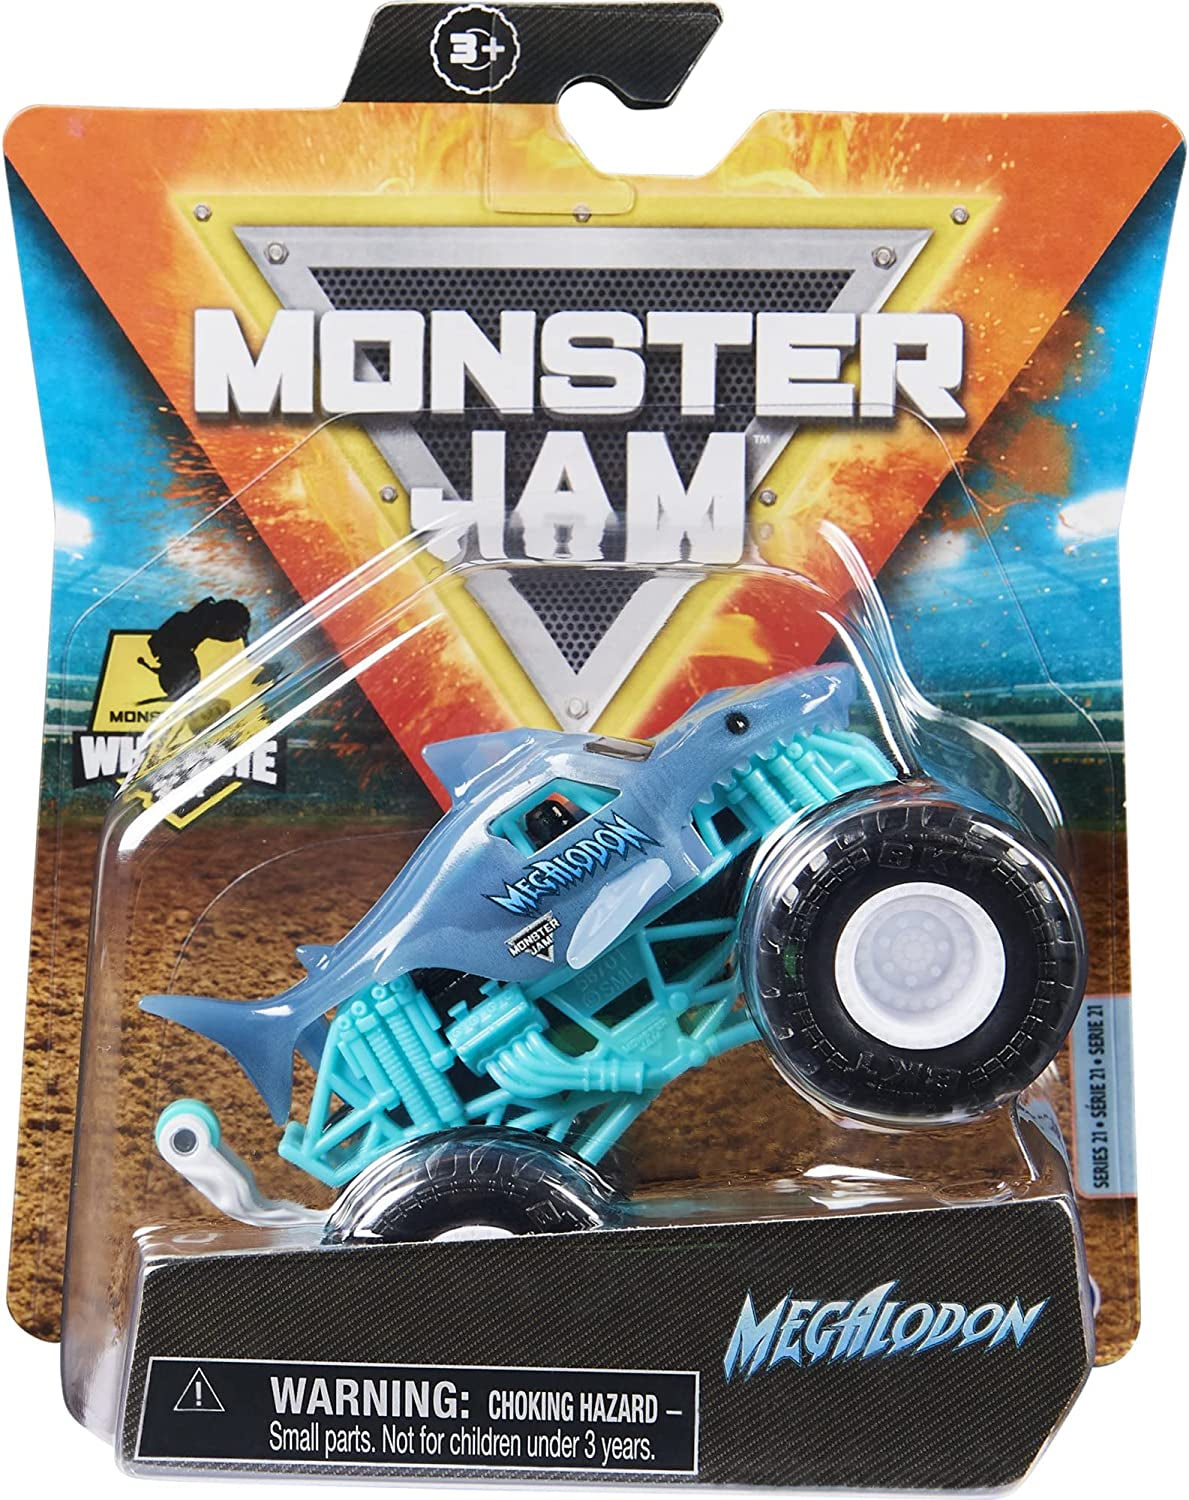 Monster Jam 2021 Spin Master 1:64 Diecast Monster Truck with Wheelie Bar: Shear Madness Megalodon